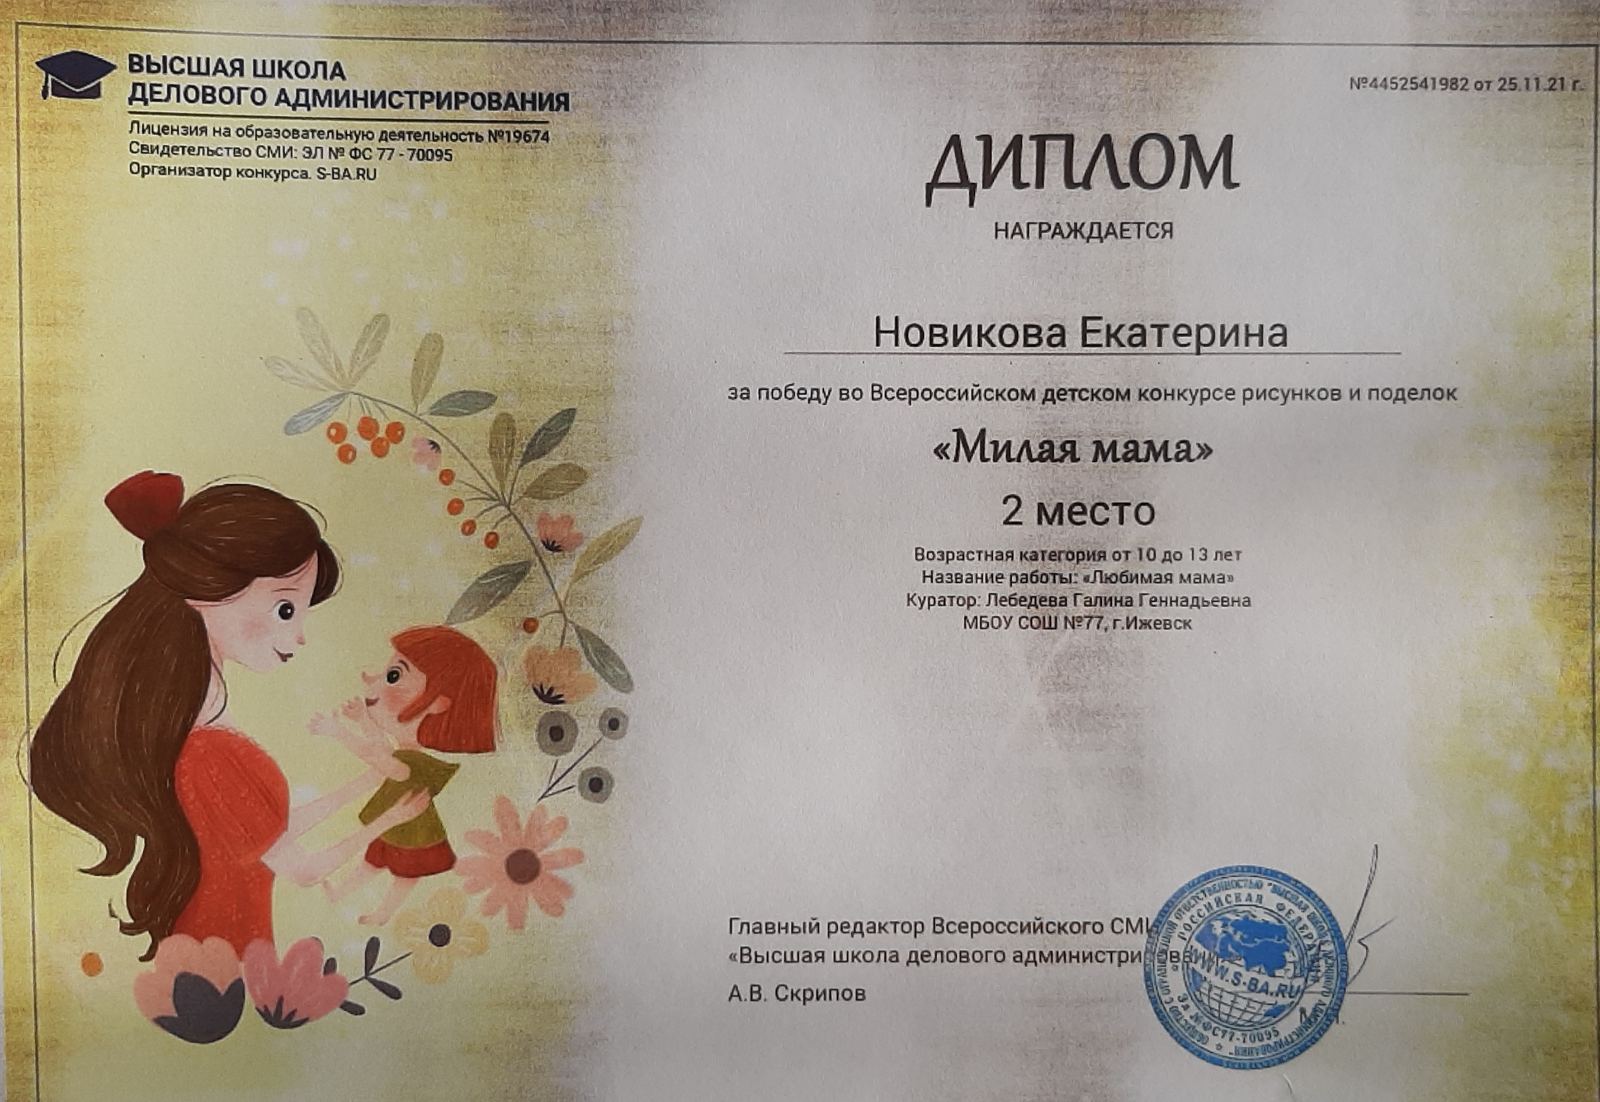 Всероссийский детский конкурс рисунков и поделок